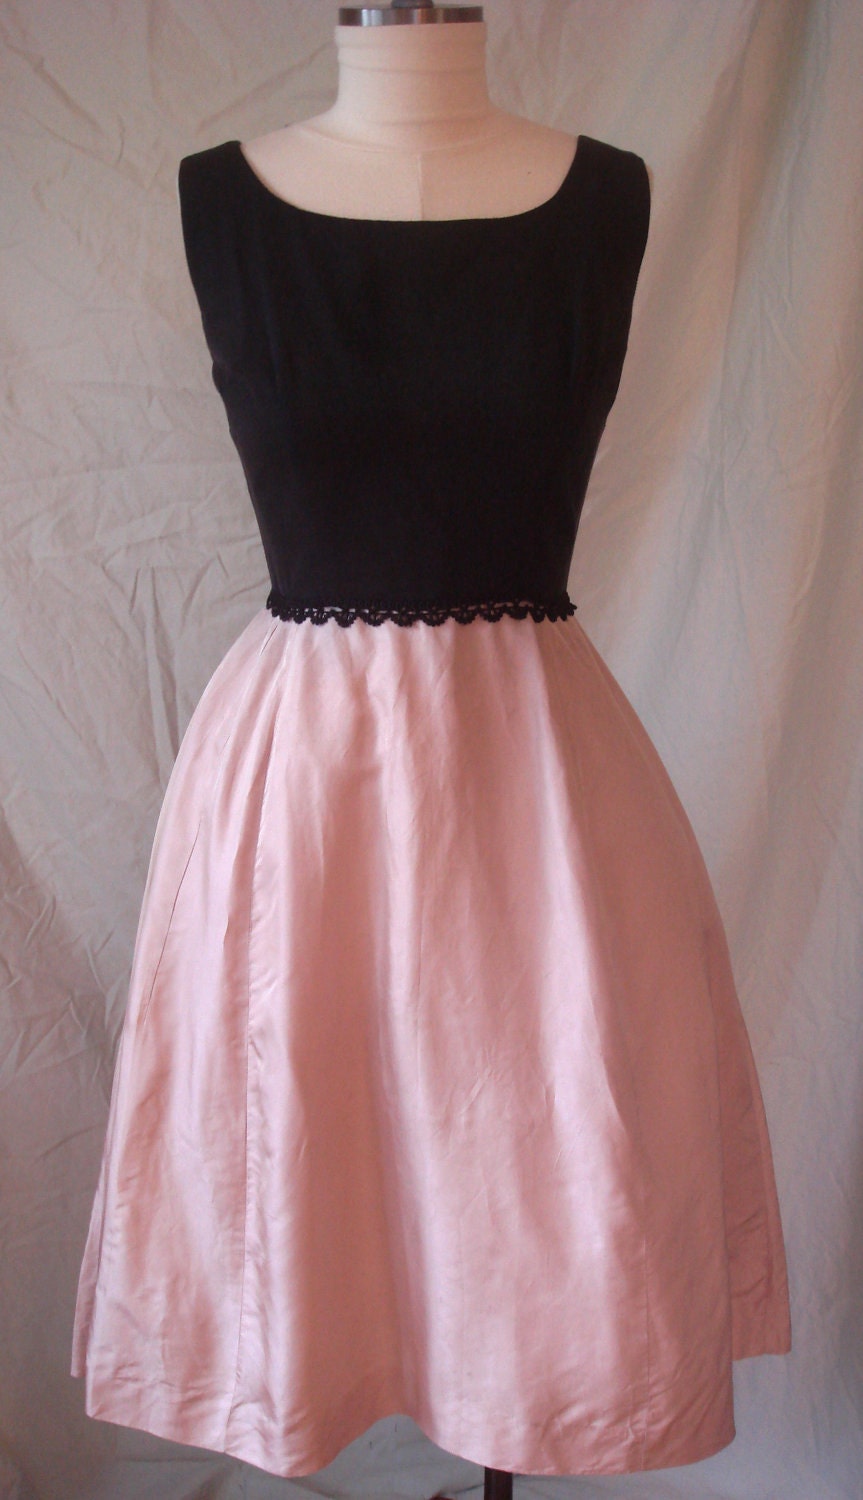 Vintage 50's Pink and Black Cocktail Dress